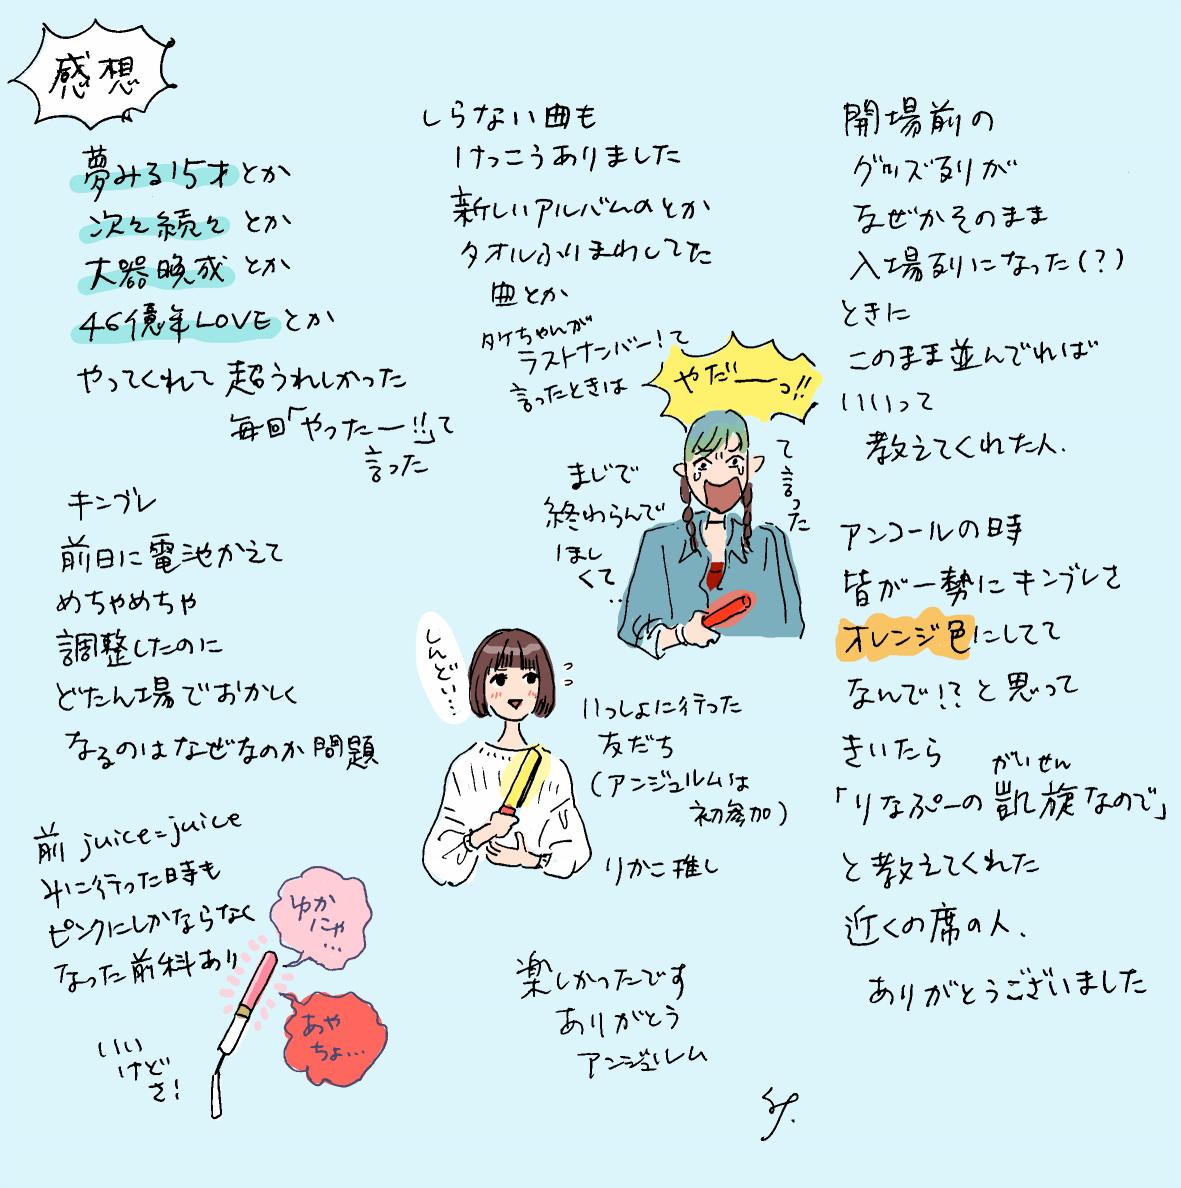 2019.05.05
アンジュルム コンサートツアー 2019春 〜輪廻転生〜
うろおぼえ衣装と感想(2/2) 